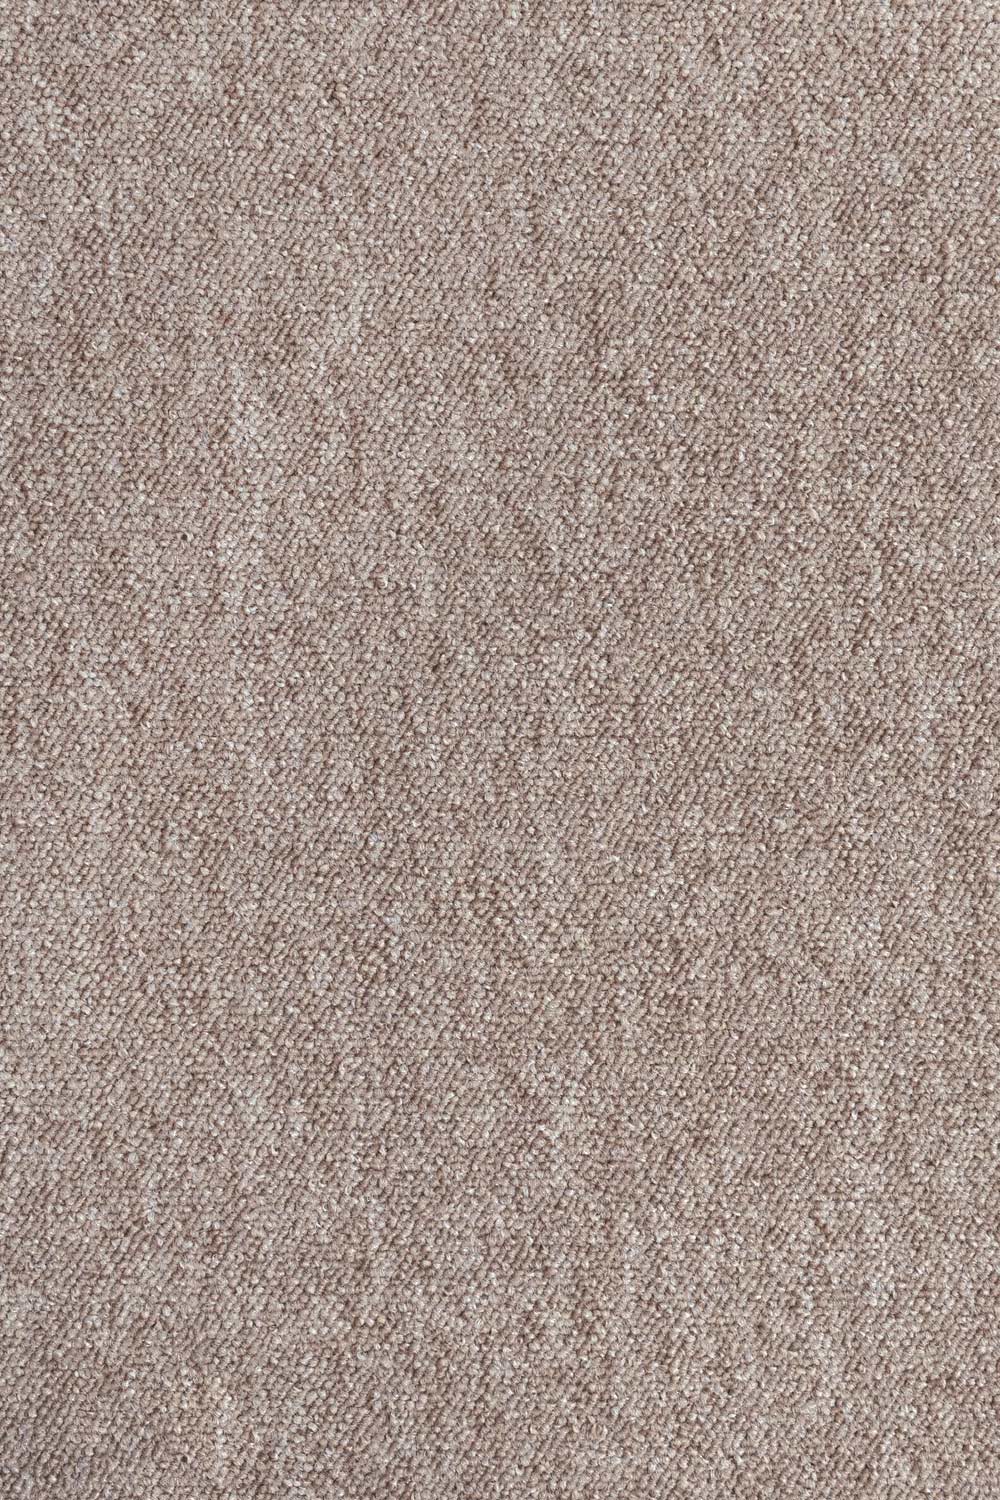 Metrážny koberec Lyon Solid 70 500 cm